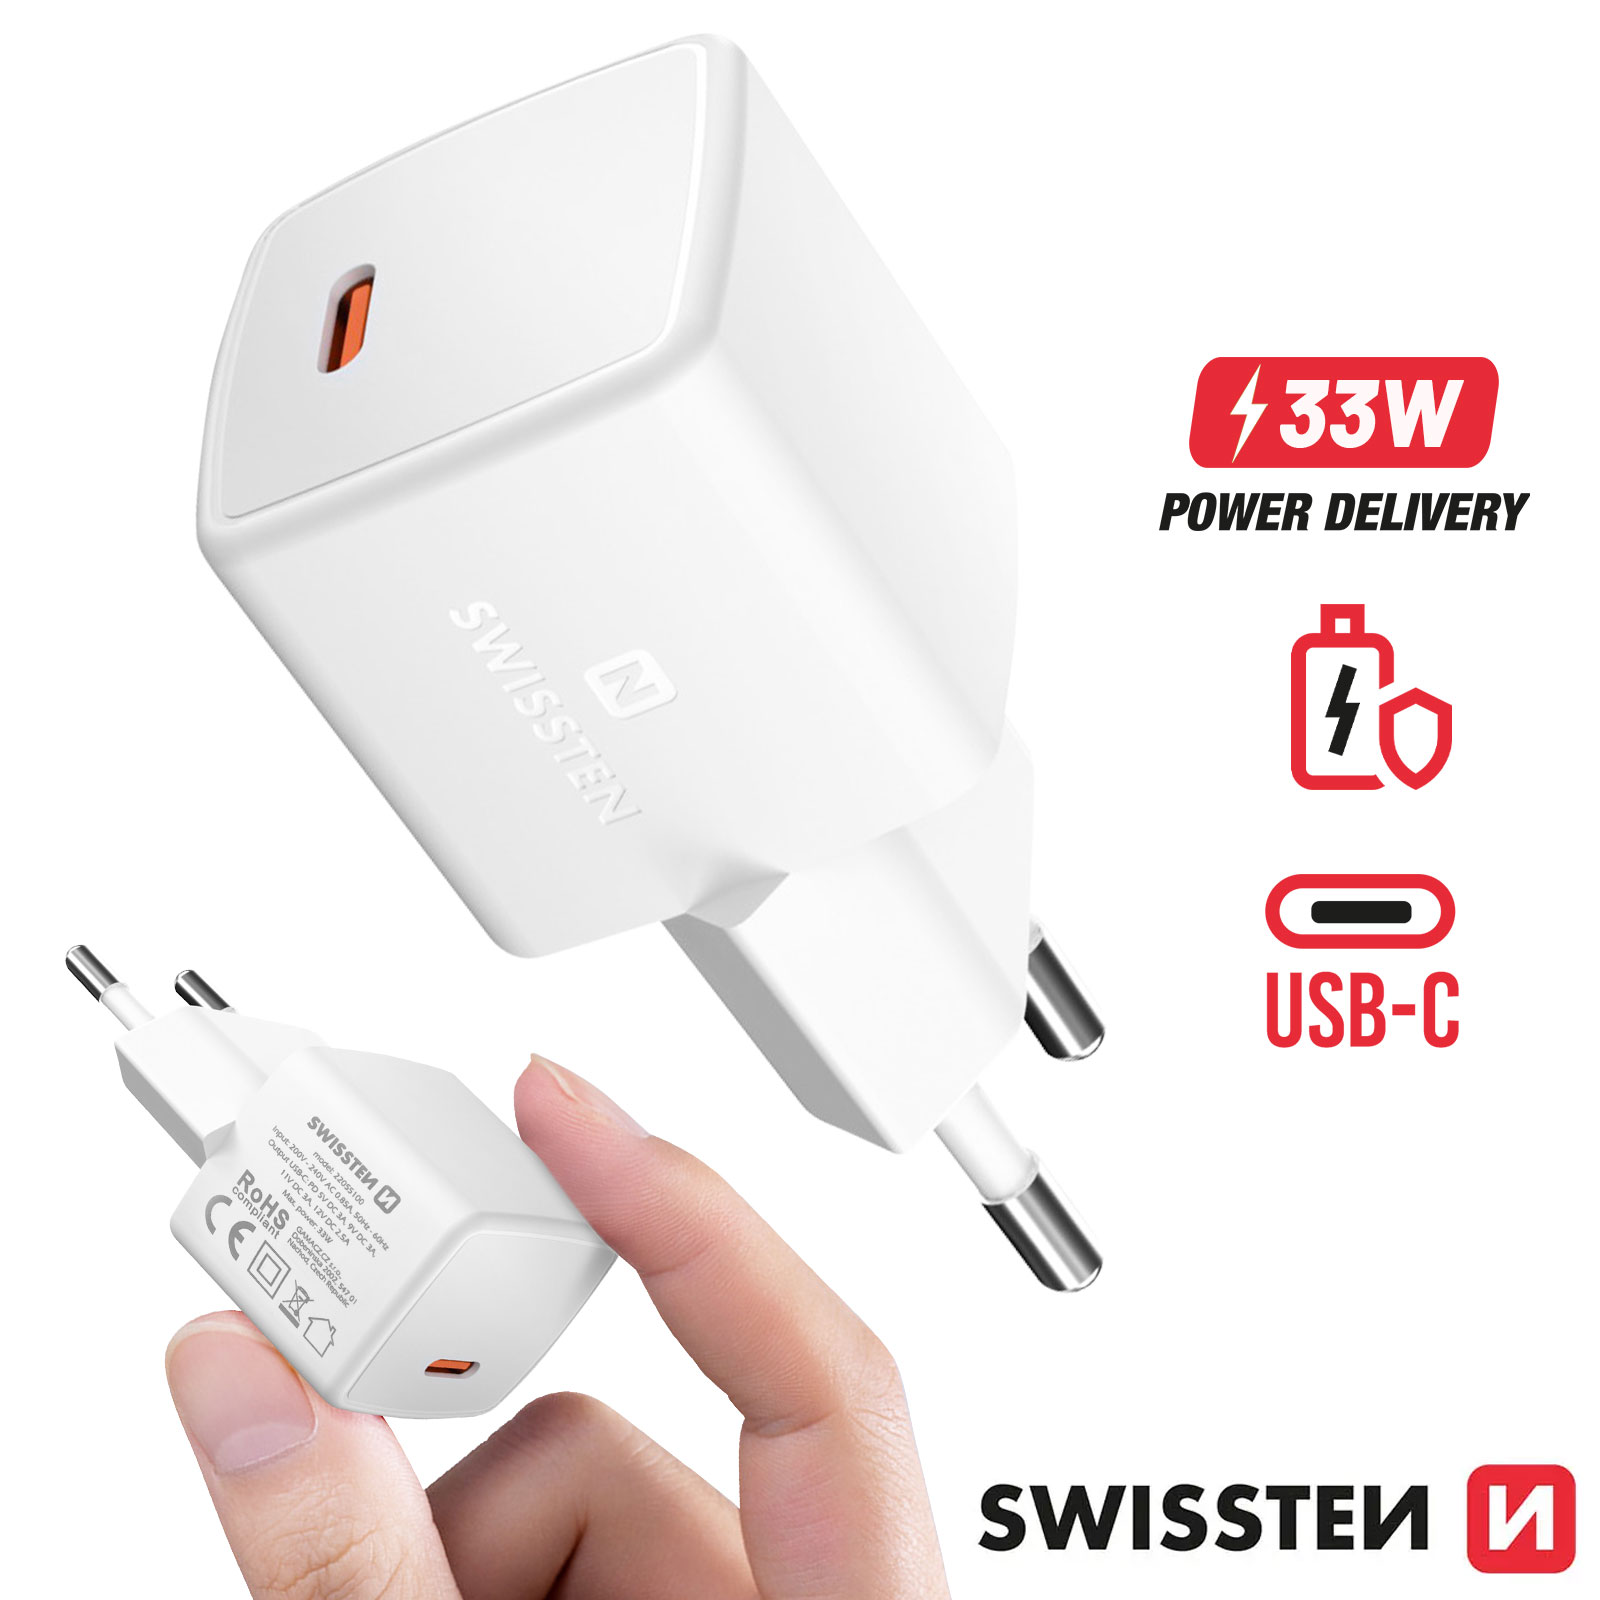 Chargeur Secteur GaN 45W USB C Power Delivery Ultra-compact - Swissten  Blanc - Français